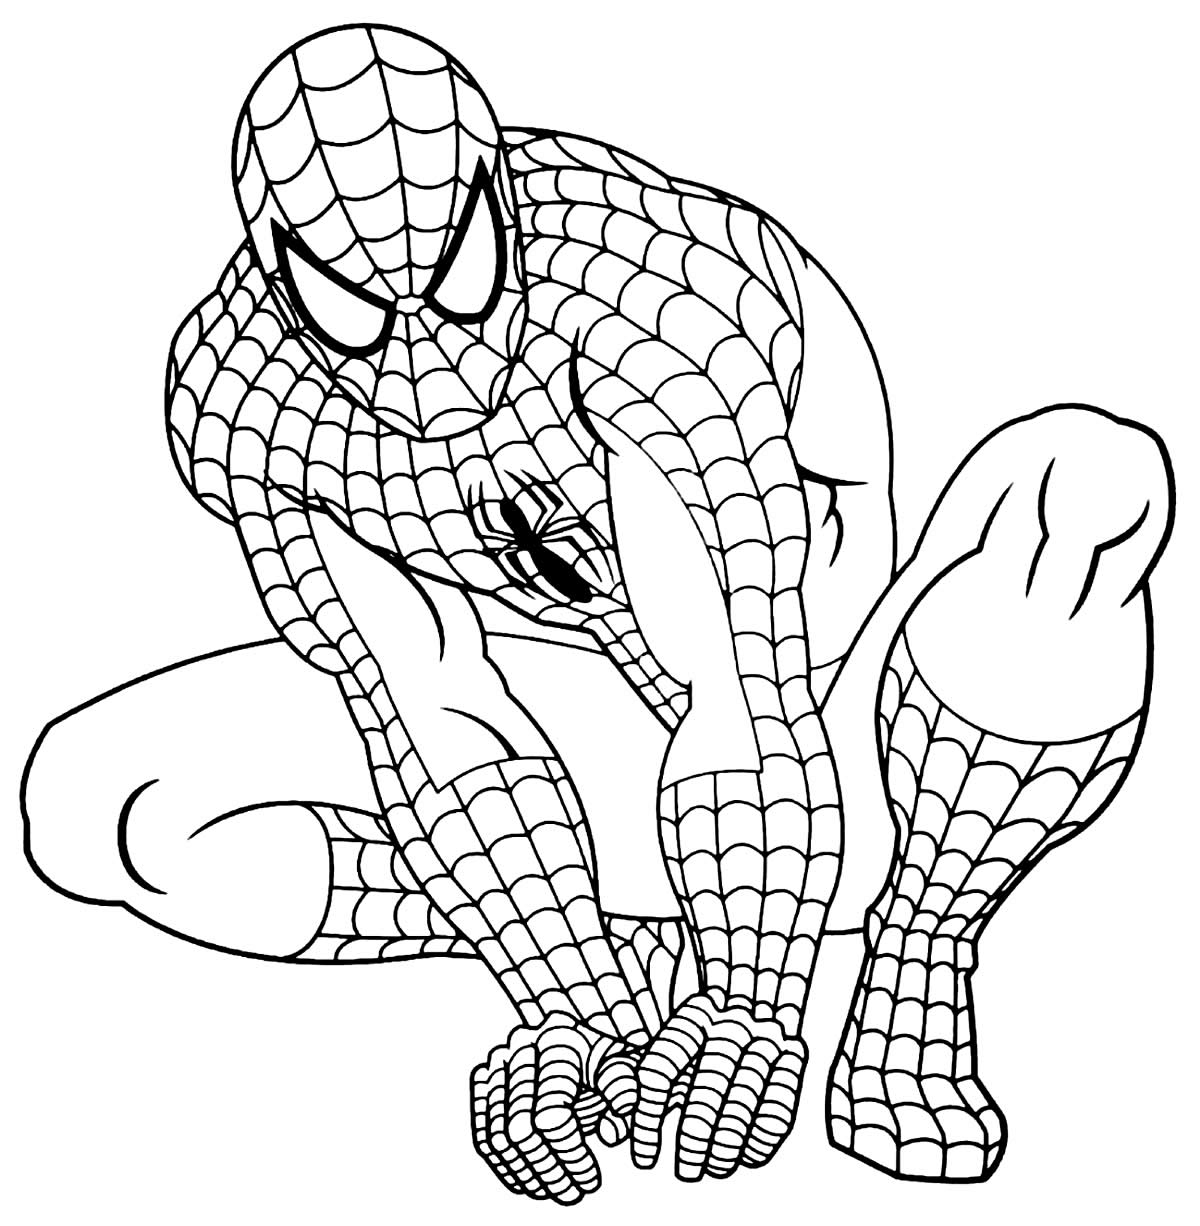 Desenhos do homem aranha para colorir